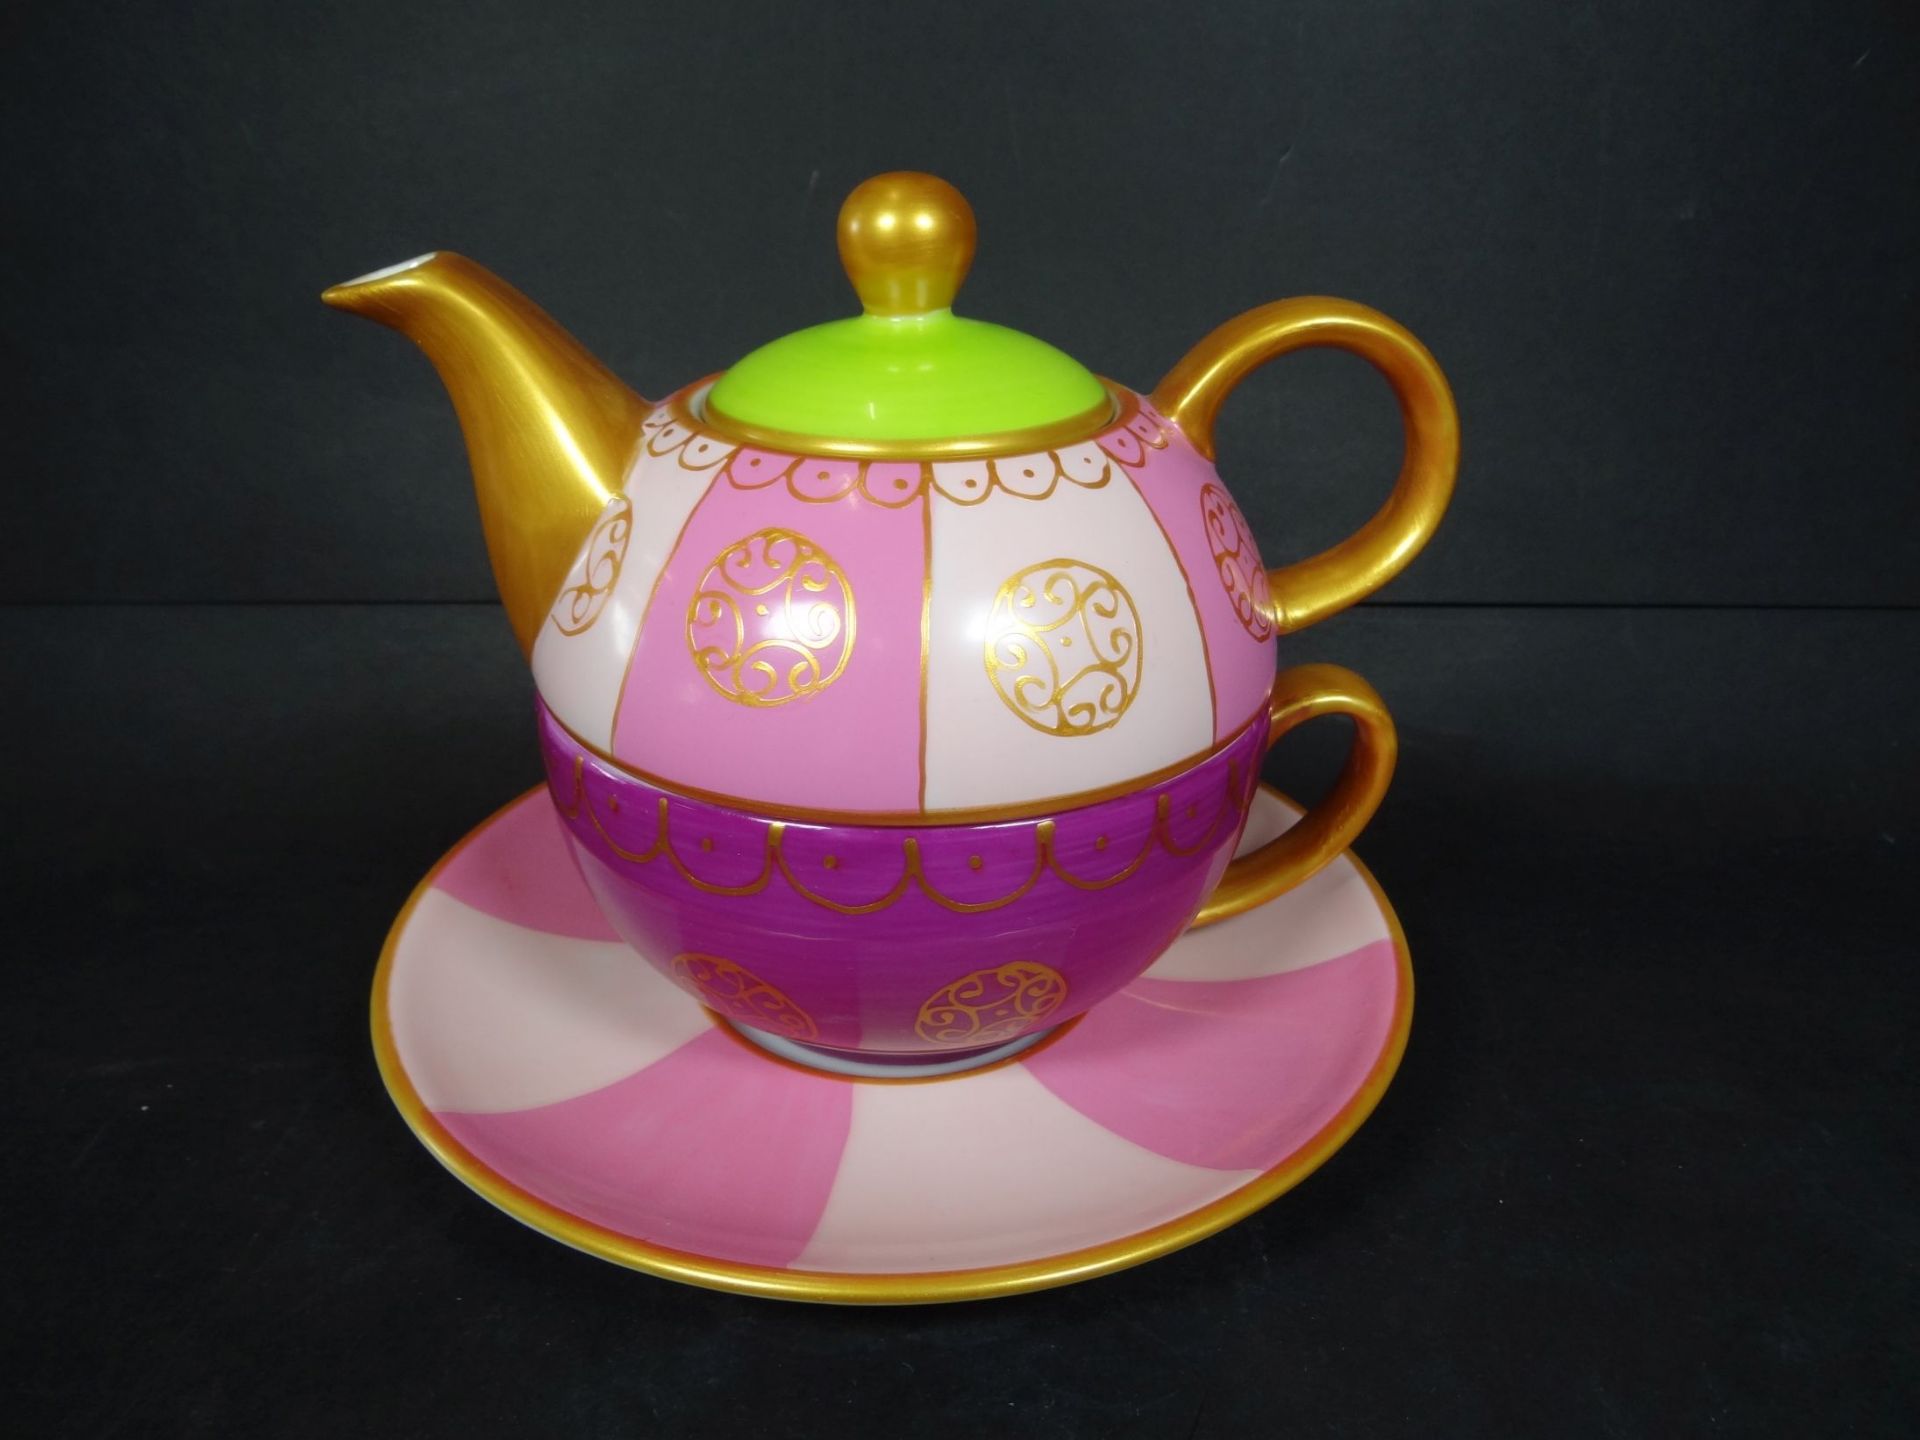 Teekanne mit Tasse "Top Line" Design, Zasse 0,2 l., Kanne 0,4 l.H-14 cm - Bild 2 aus 7